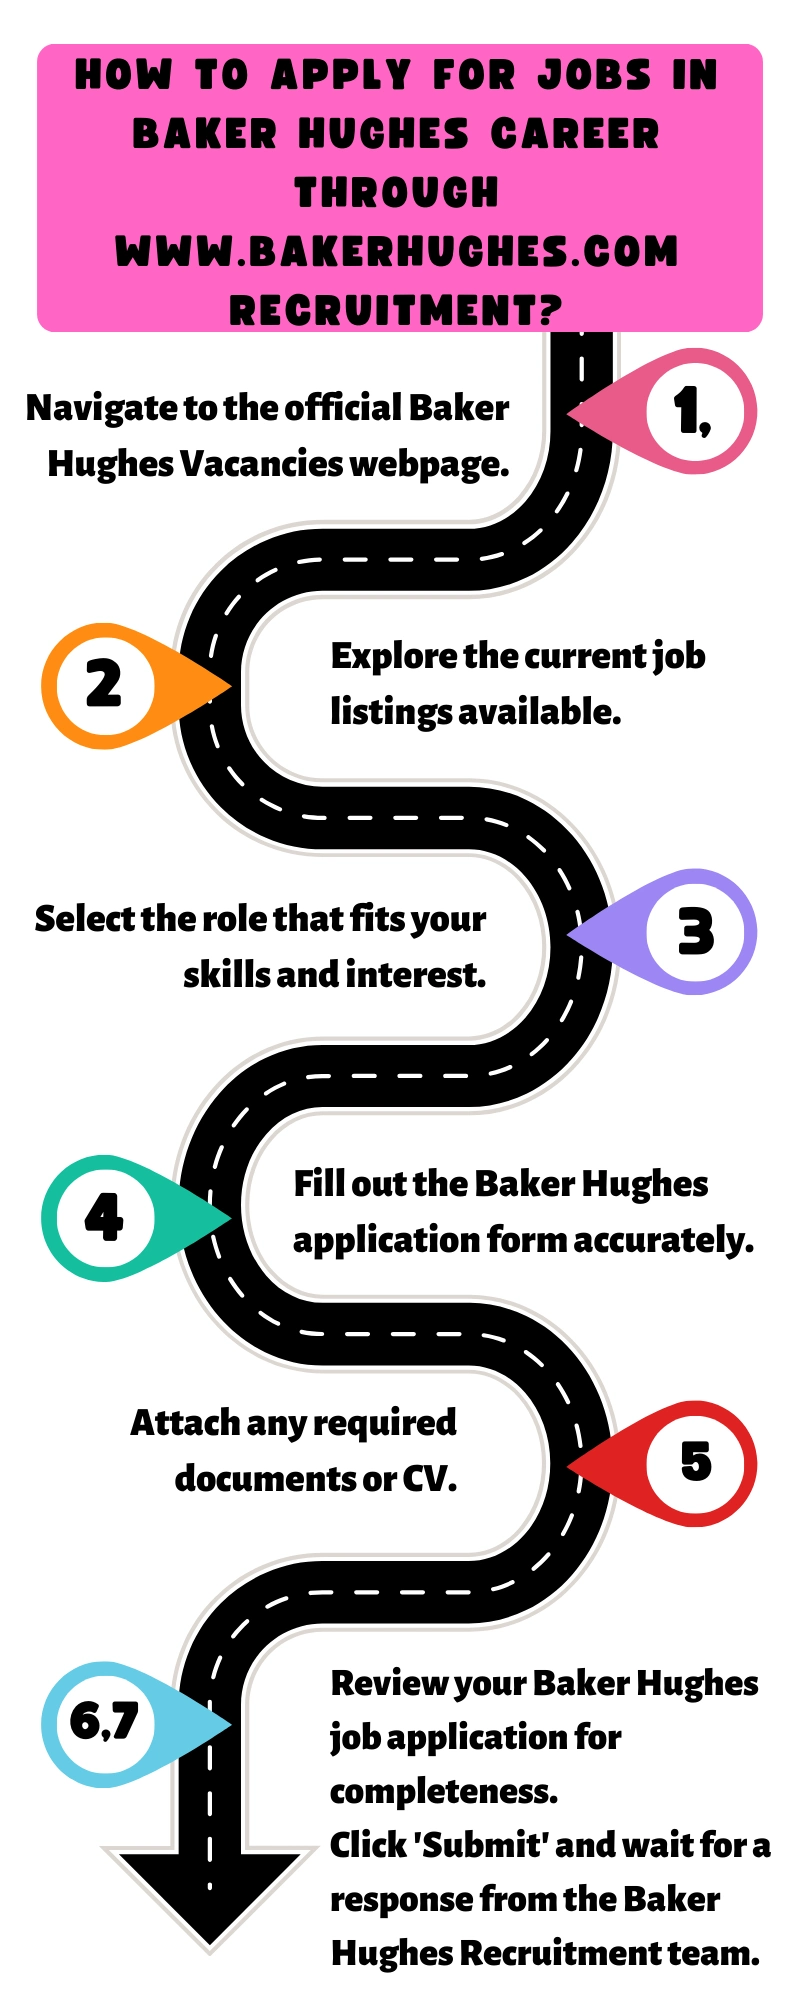 How to Apply for Jobs in Baker Hughes Career through www.bakerhughes.com recruitment?